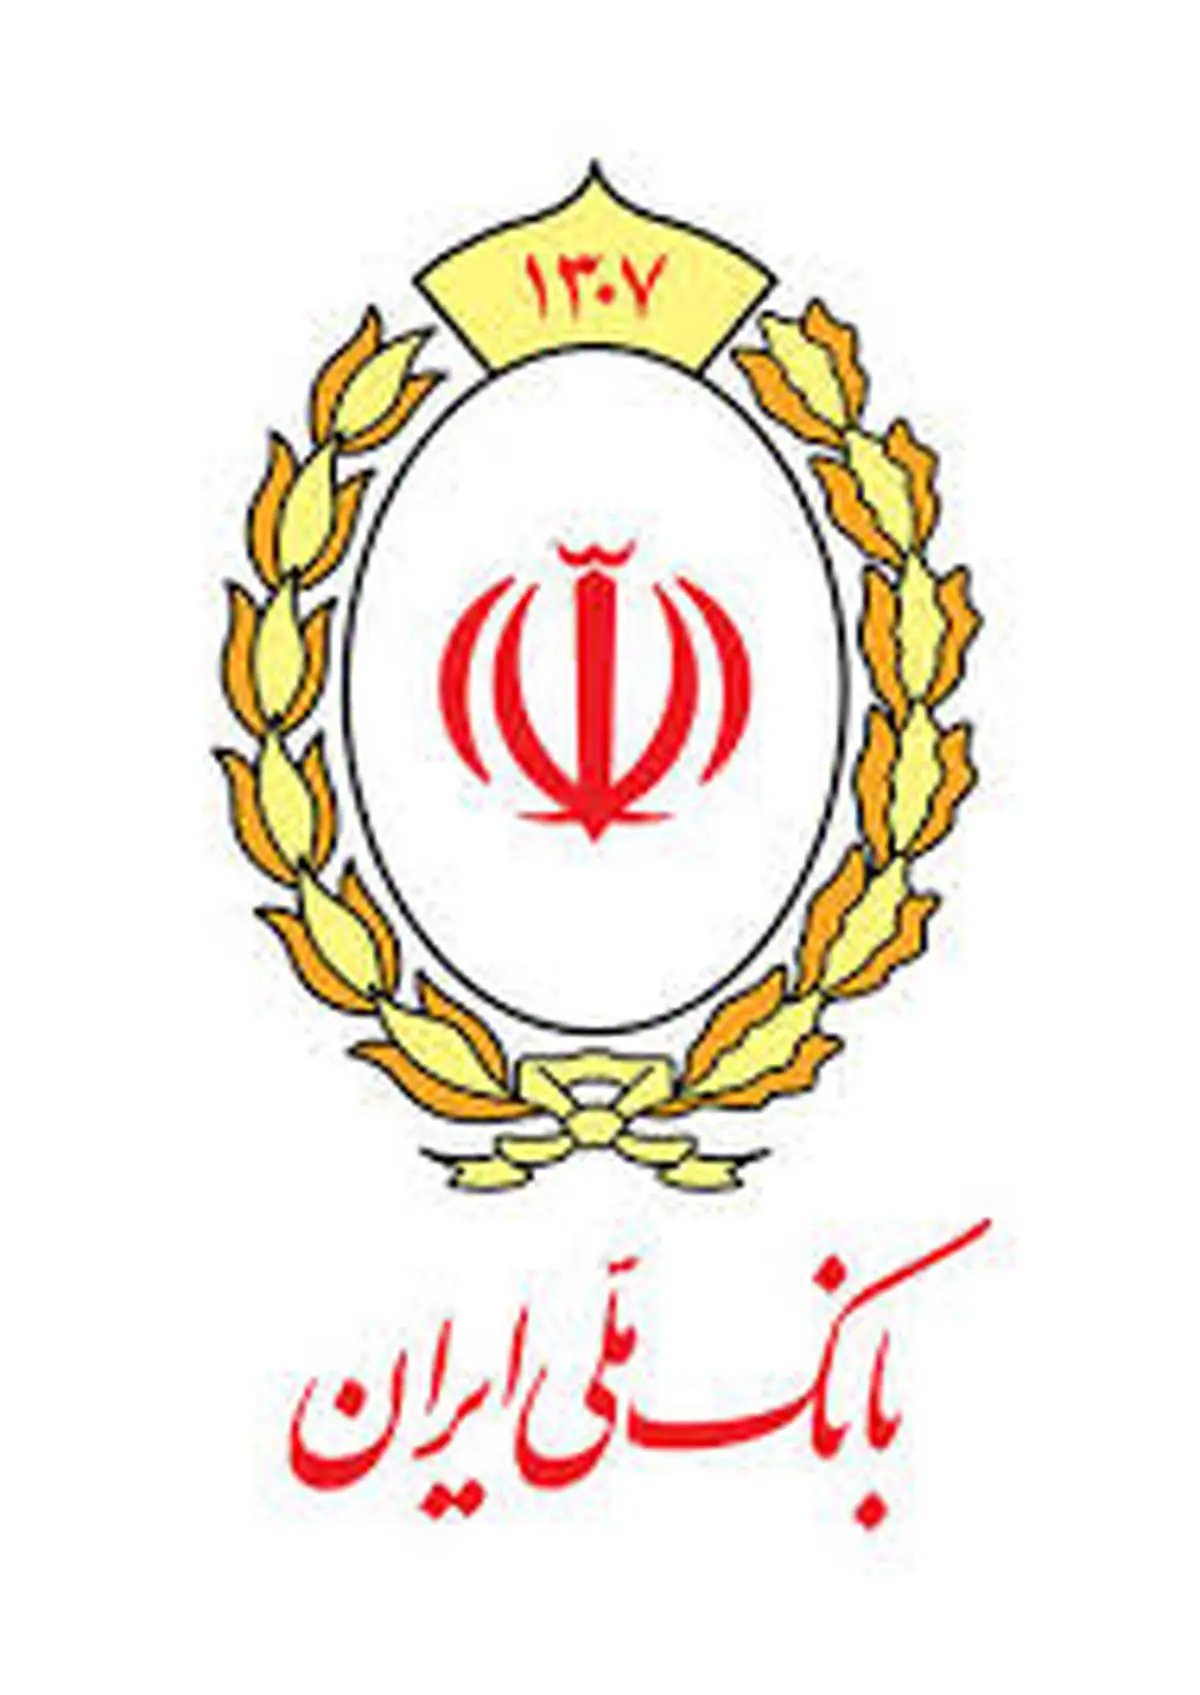 رتبه برتر روابط عمومی بانک ملی ایران در فاز تاثیرگذار بلوغ رسانه های دیجیتال

